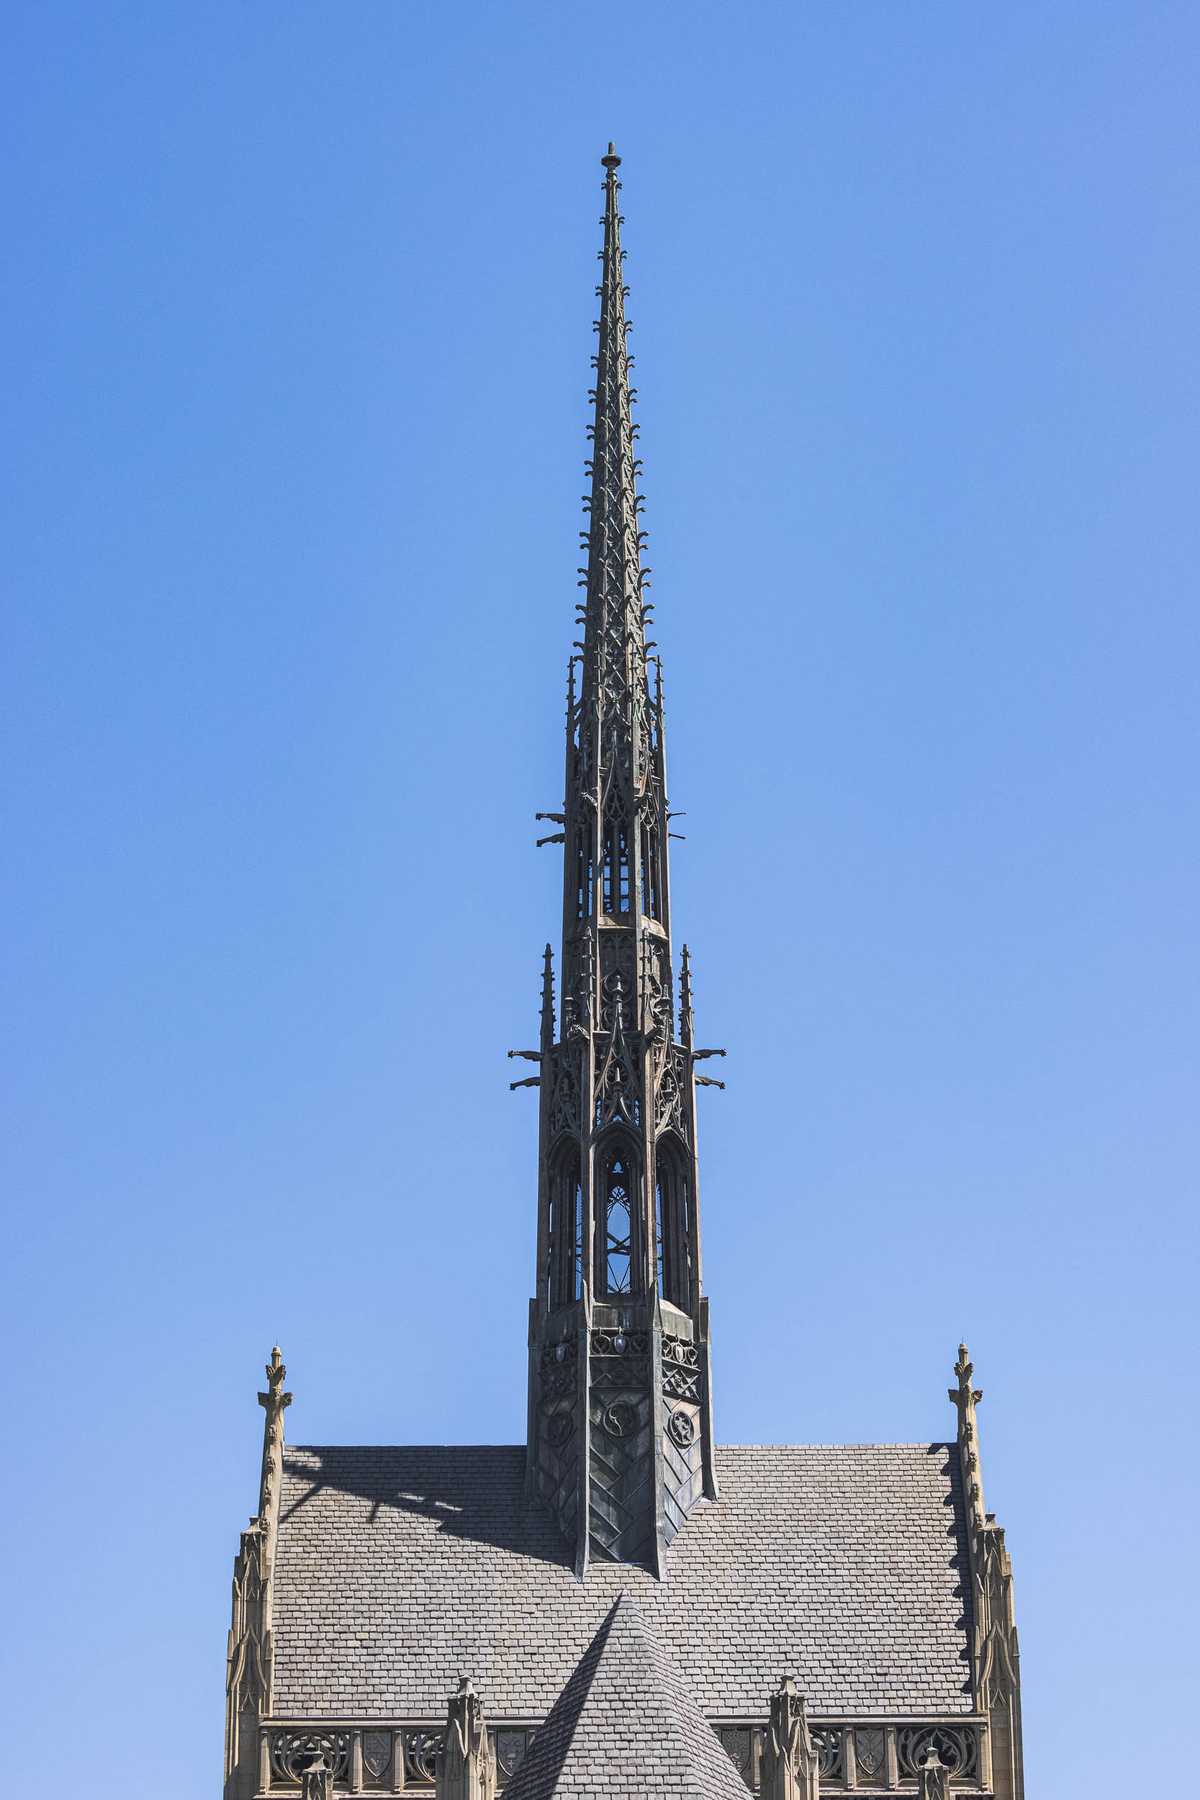 The spire of Heinz Chapel